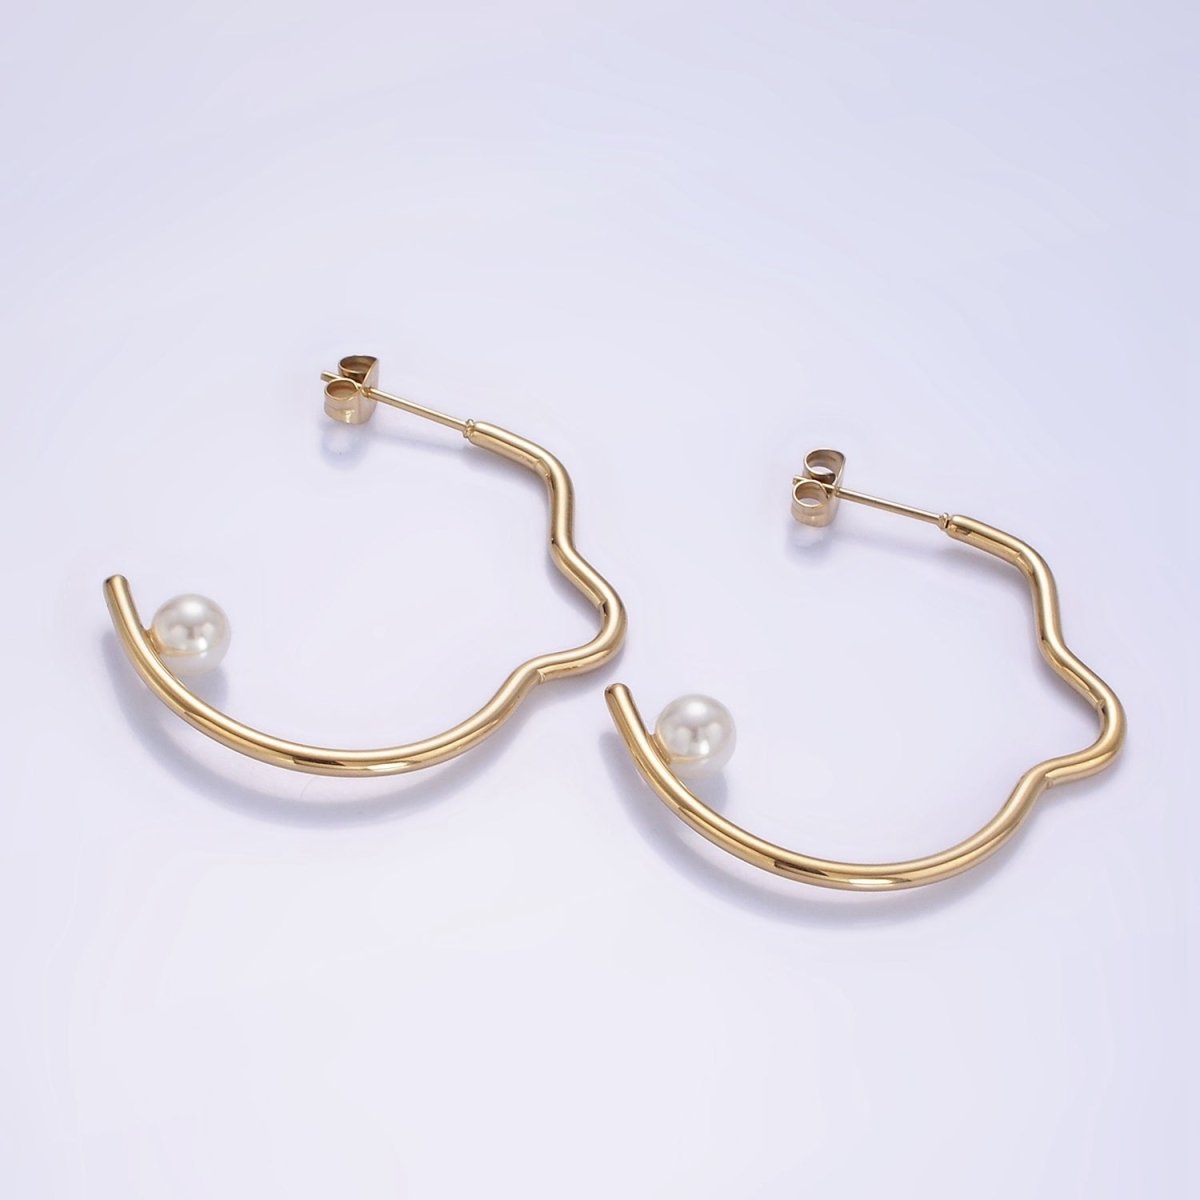 Stainless Steel 40mm Pearl Geometric Curved C-Shaped Hoop Earrings | AB1150 - DLUXCA